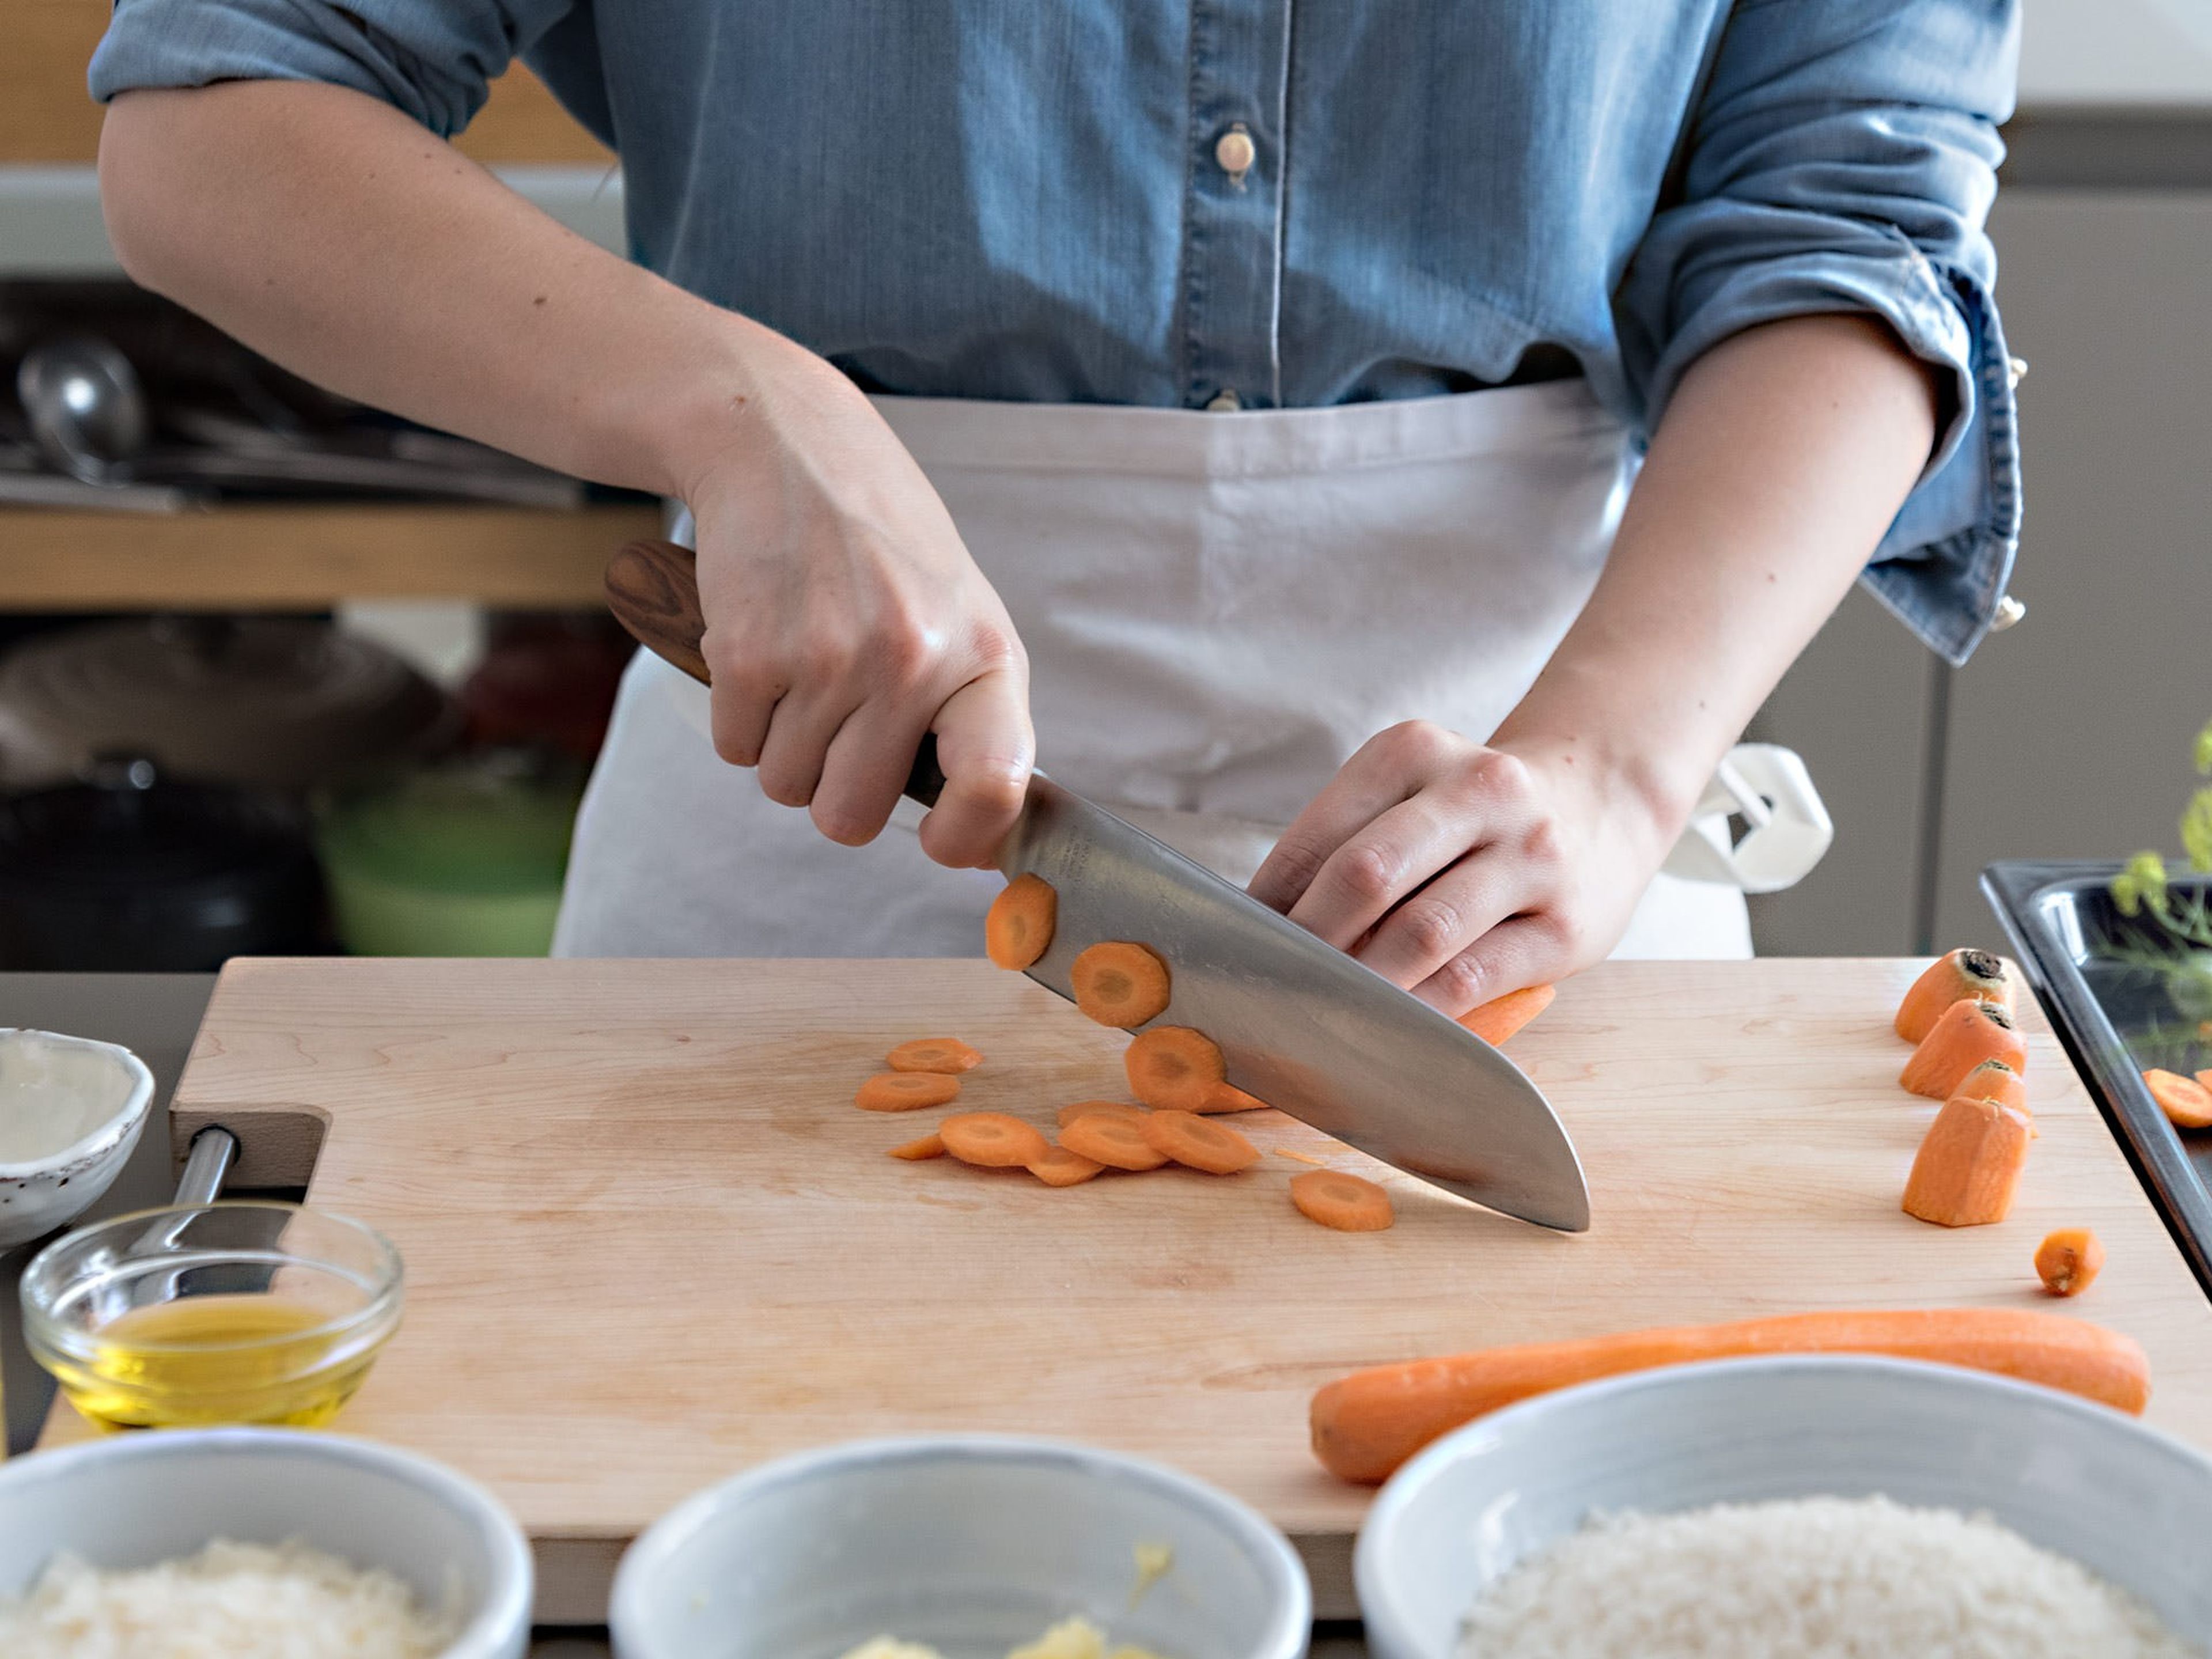 Backofen auf 250°C vorheizen. Karotten schälen und in Scheiben schneiden. Mit Olivenöl, Salz und Pfeffer vermengen und im Backofen ca. 10 Min. rösten.